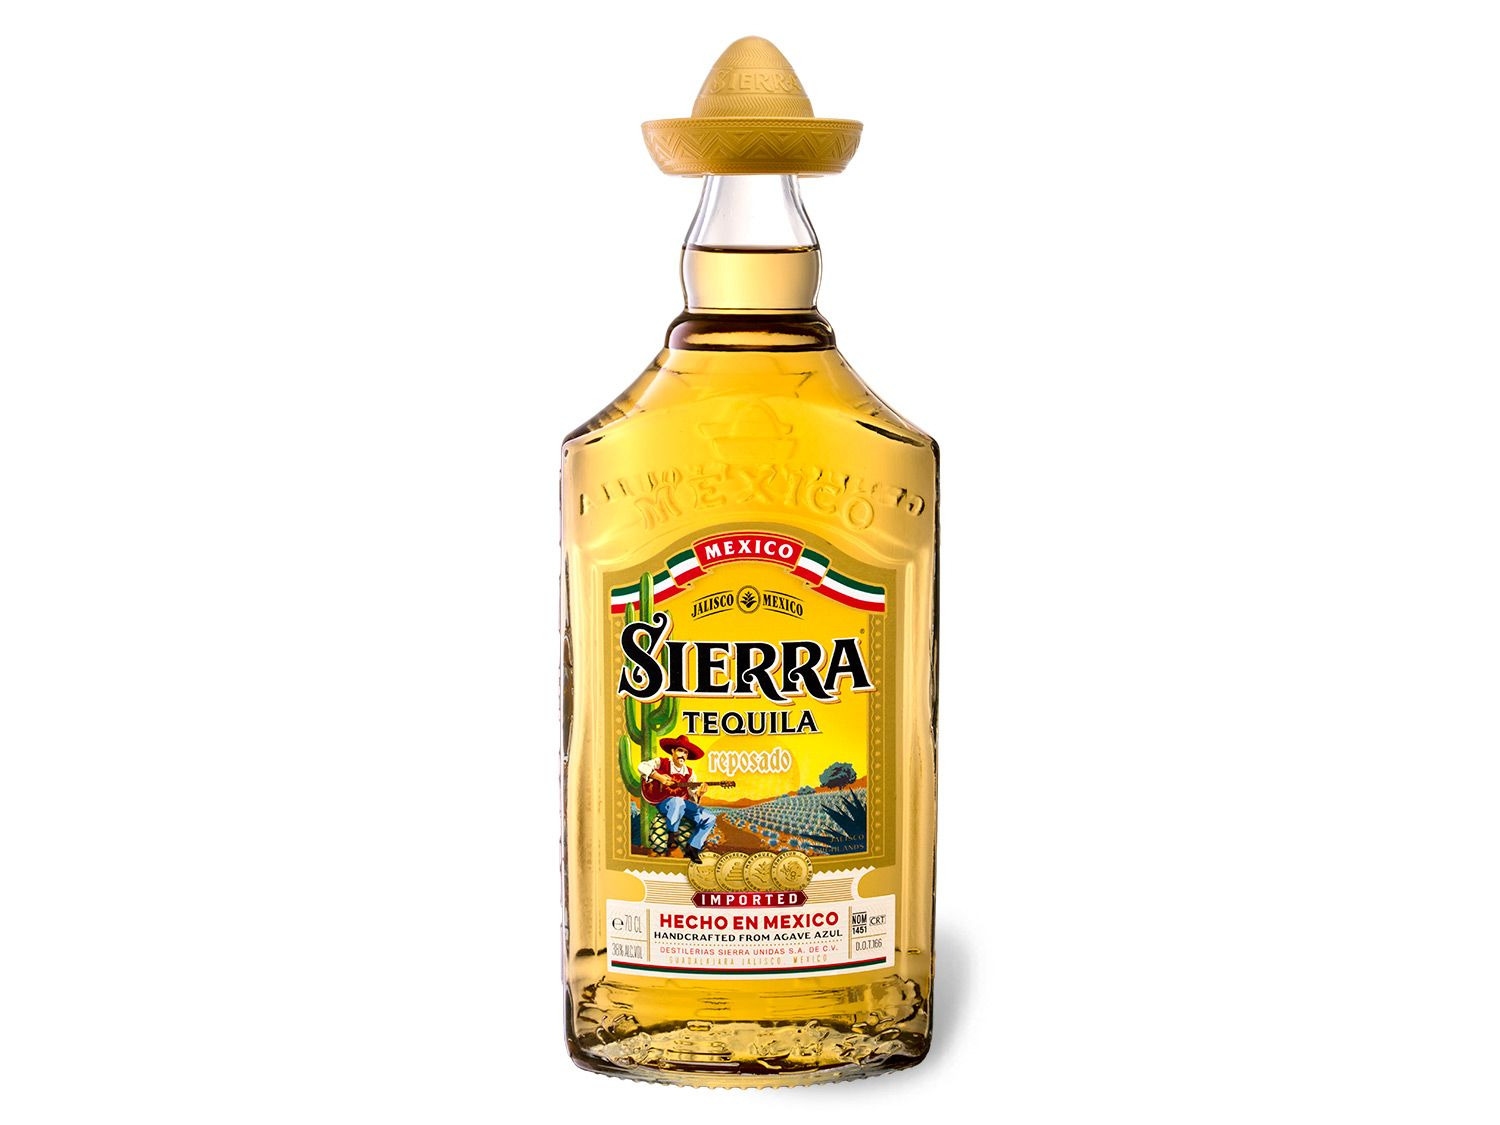 Sierra Tequila Reposado 38% Vol online kaufen | LIDL